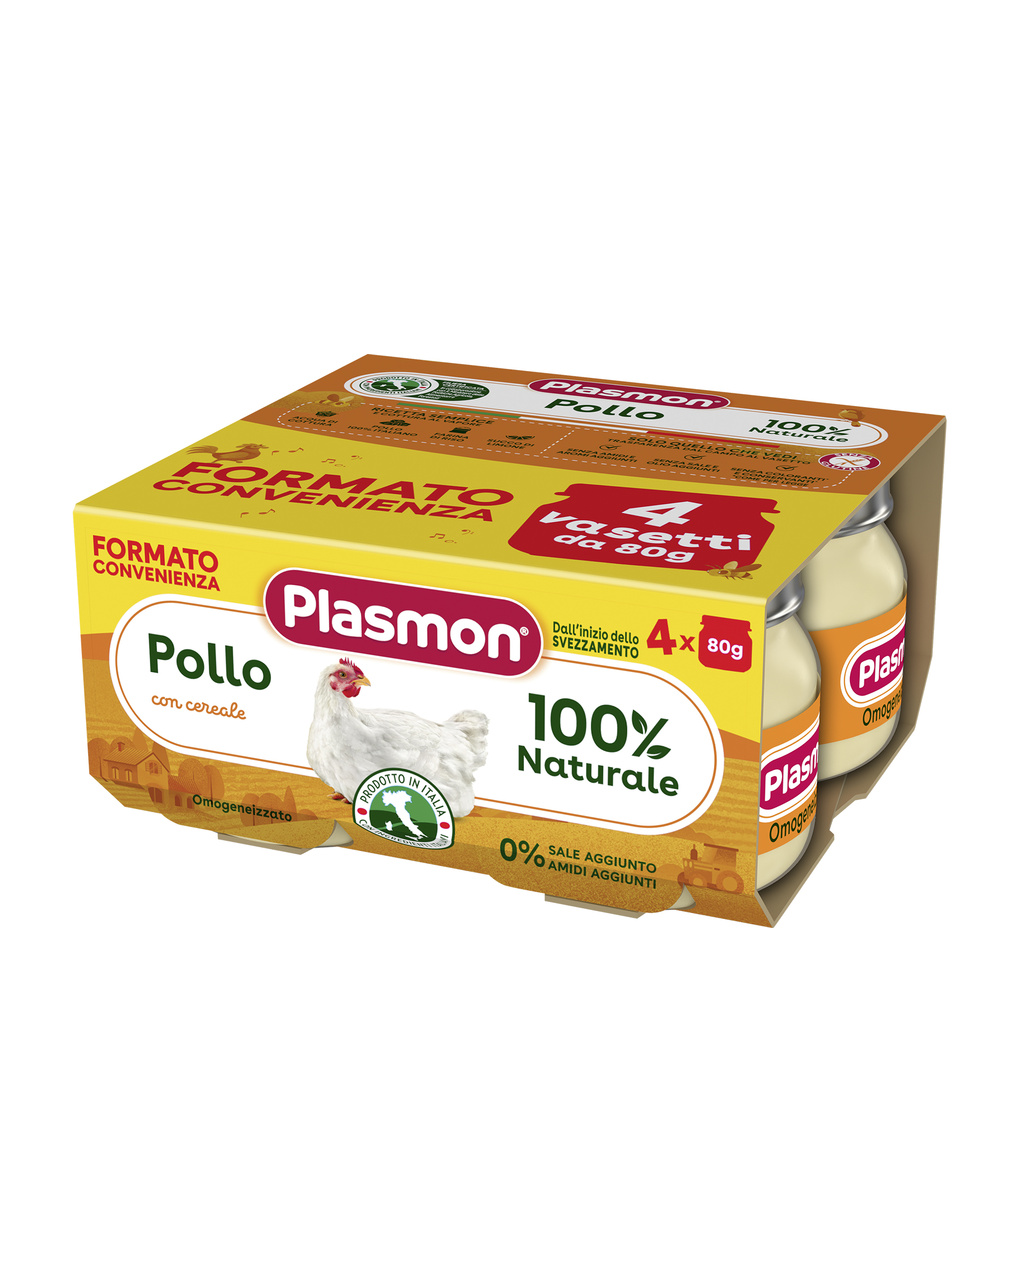 Plasmon - omogeneizzato pollo 4x80g - Plasmon